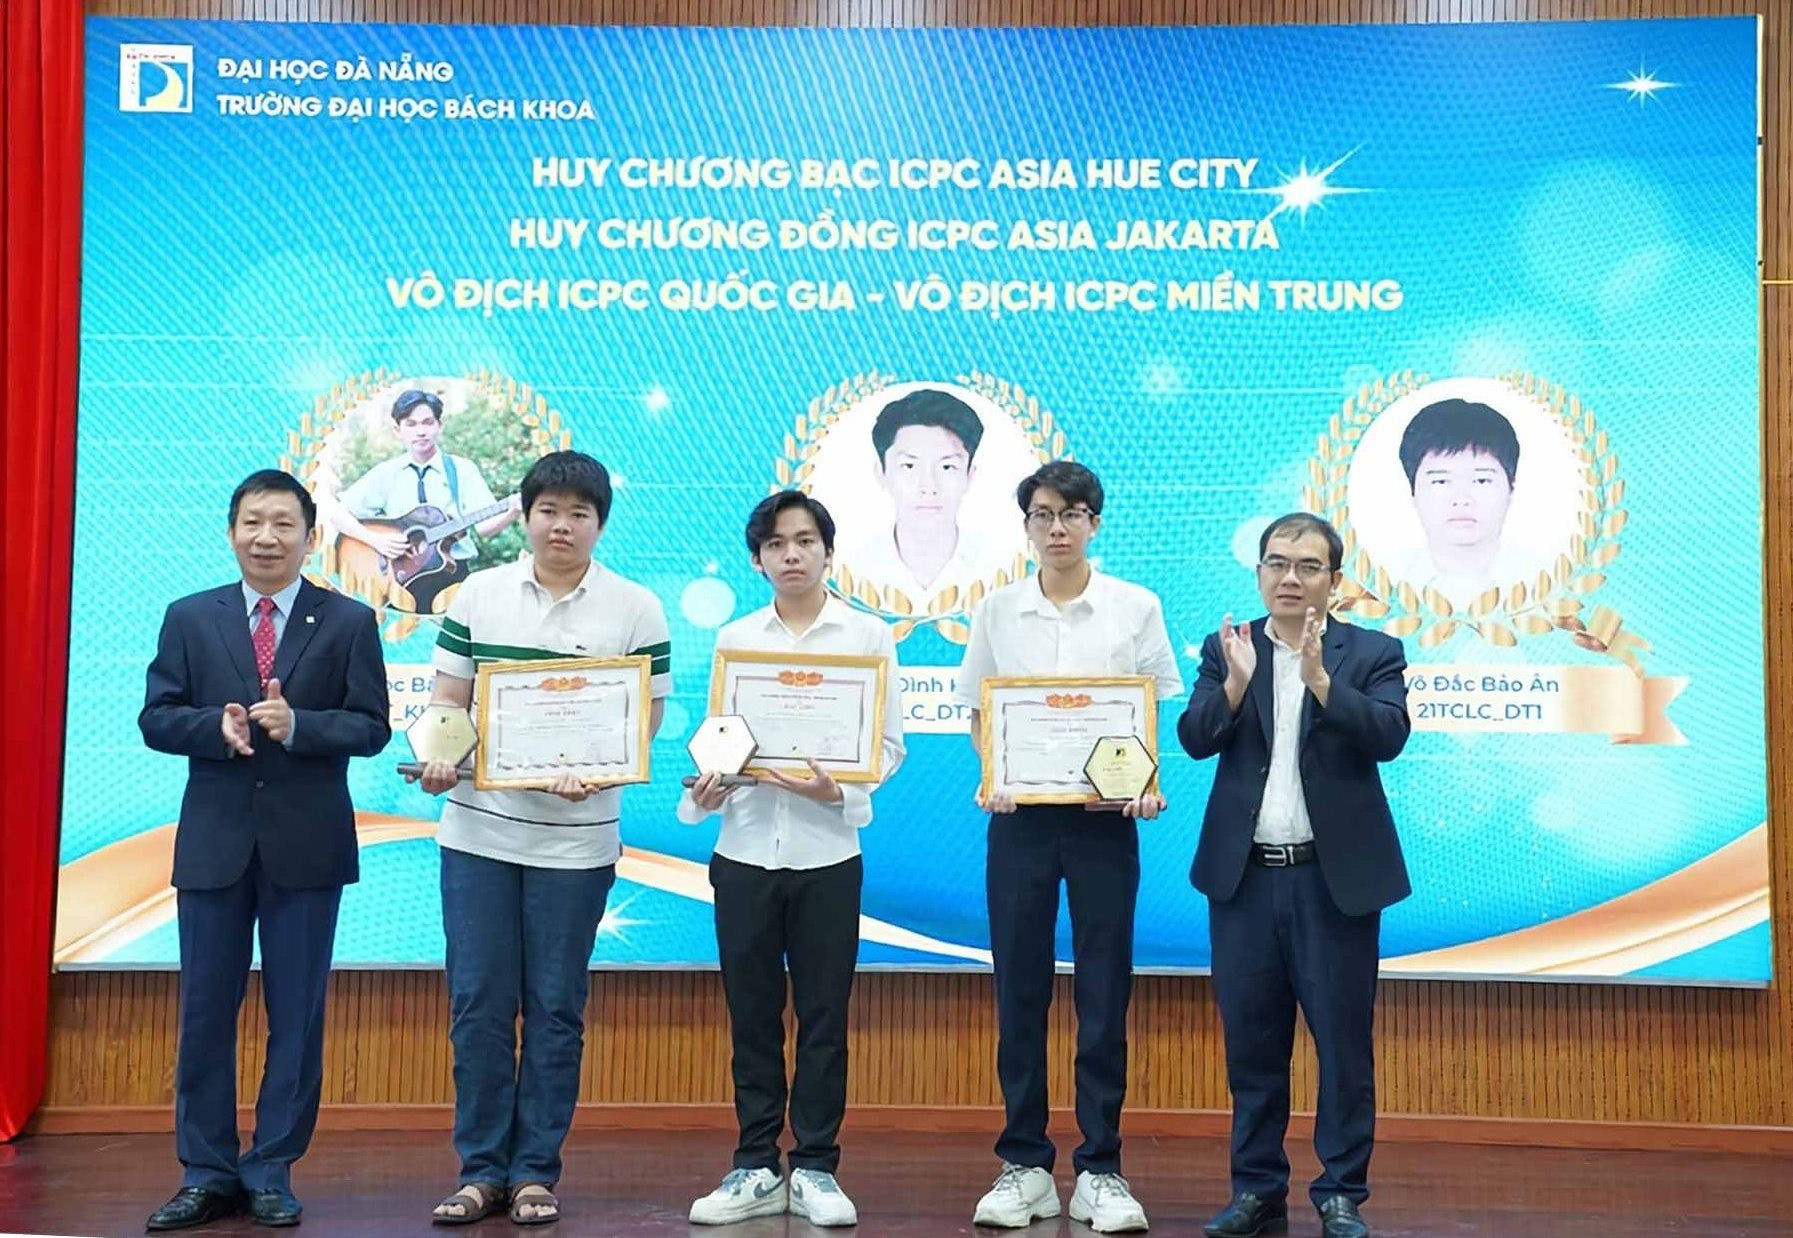 Tôn vinh nhóm SV đạt Huy chương Bạc kỳ thi ICPC Asia Hue City và Huy chương Bạc kỳ thi ICPC Asia Jakarta 2023, Vô địch ICPC Quốc gia và Vô địch ICPC miền Trung 2023. Ảnh XL